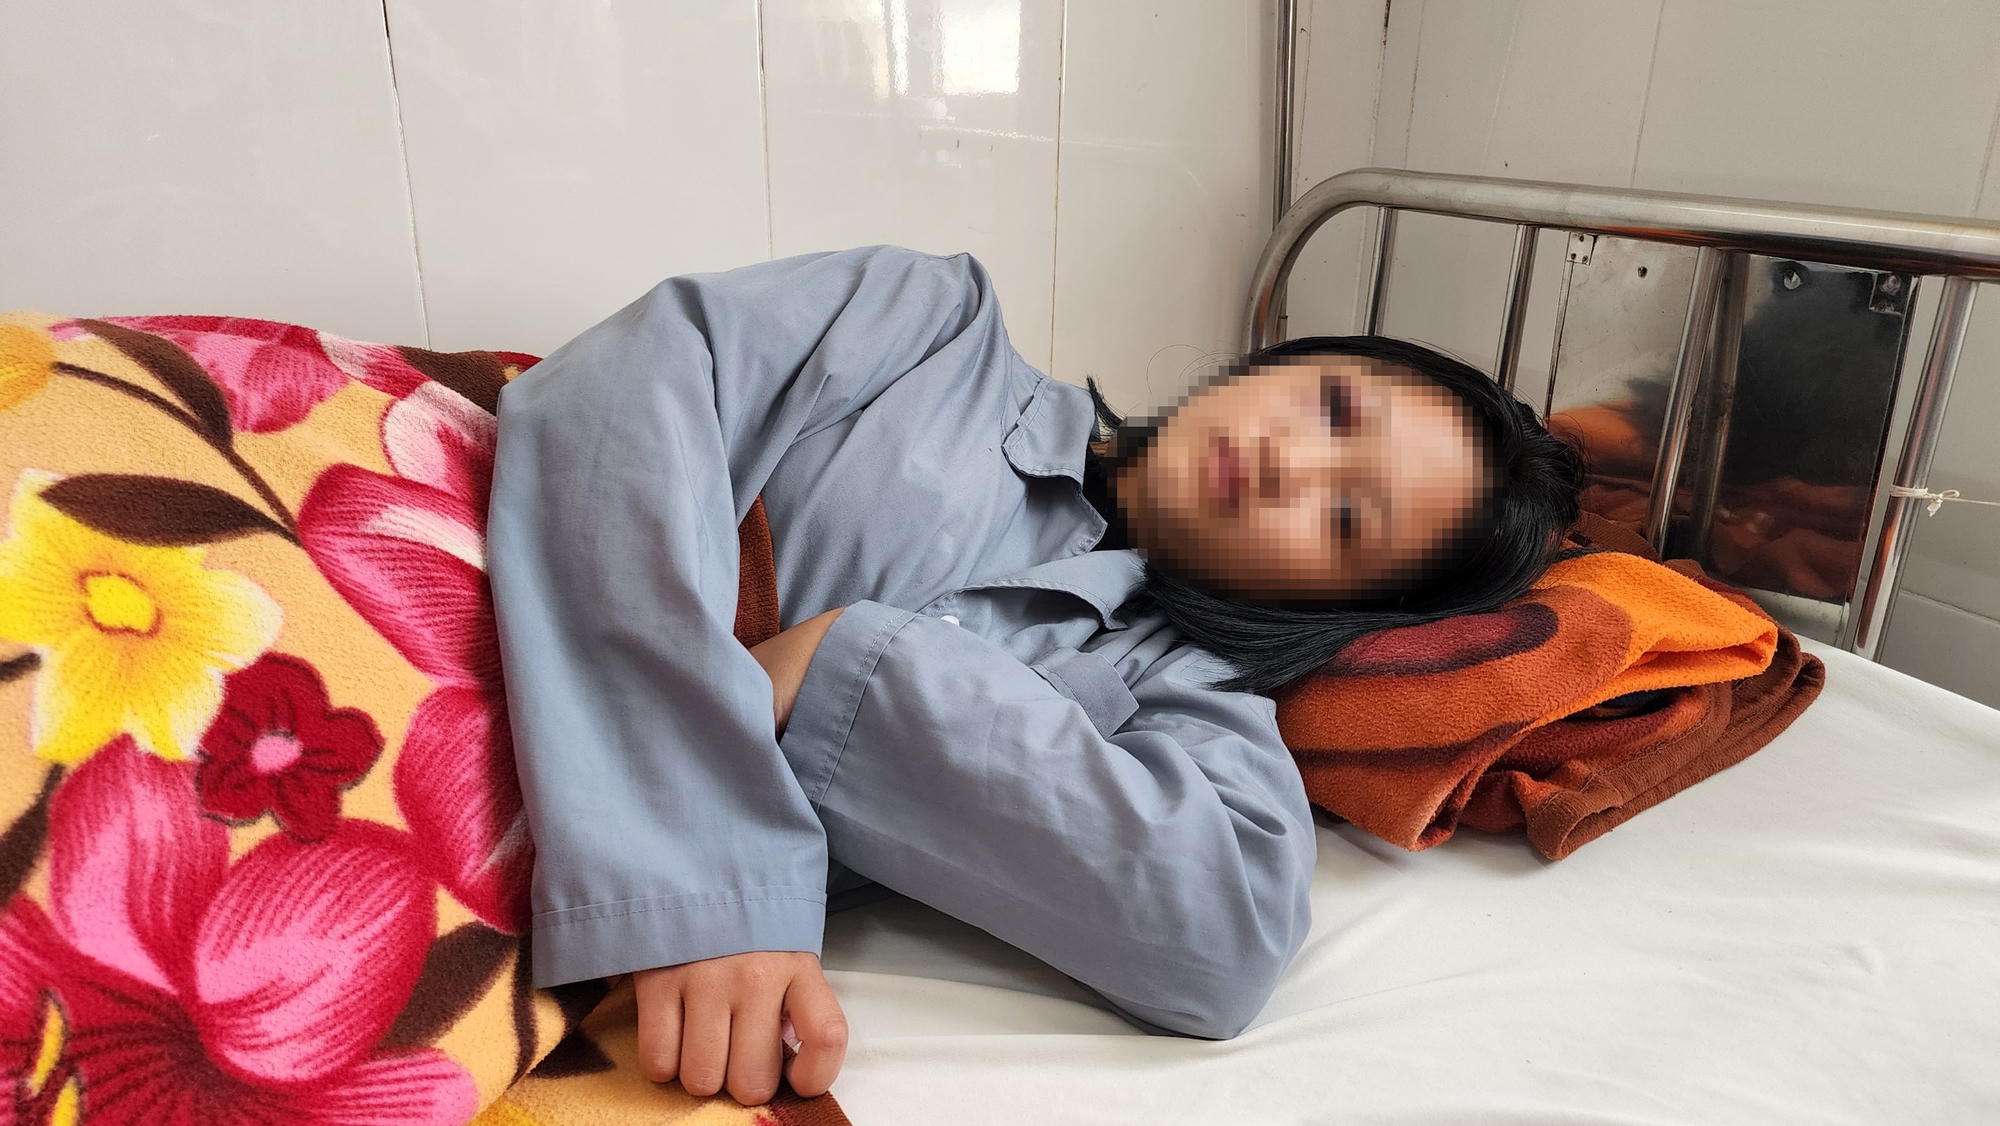 Nữ sinh lớp 7 bị đánh hội đồng ở Lâm Đồng, nhập viện trong tình trạng hoảng loạn  - Ảnh 2.